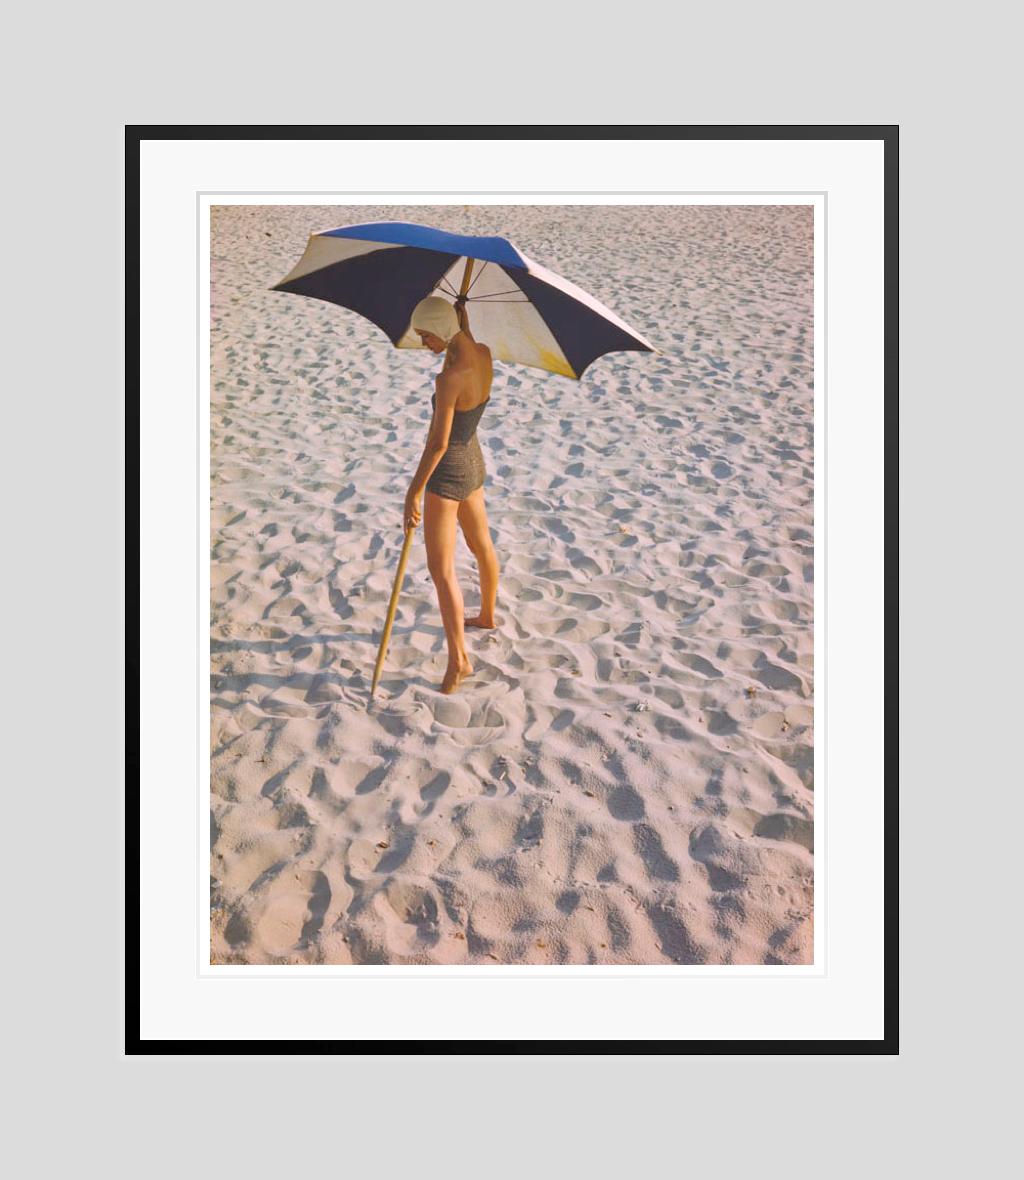 Mädchen am Strand 

1948

Beachwear-Mode-Shooting mit Sonnenschirmen

von Toni Frissell

40 x 30